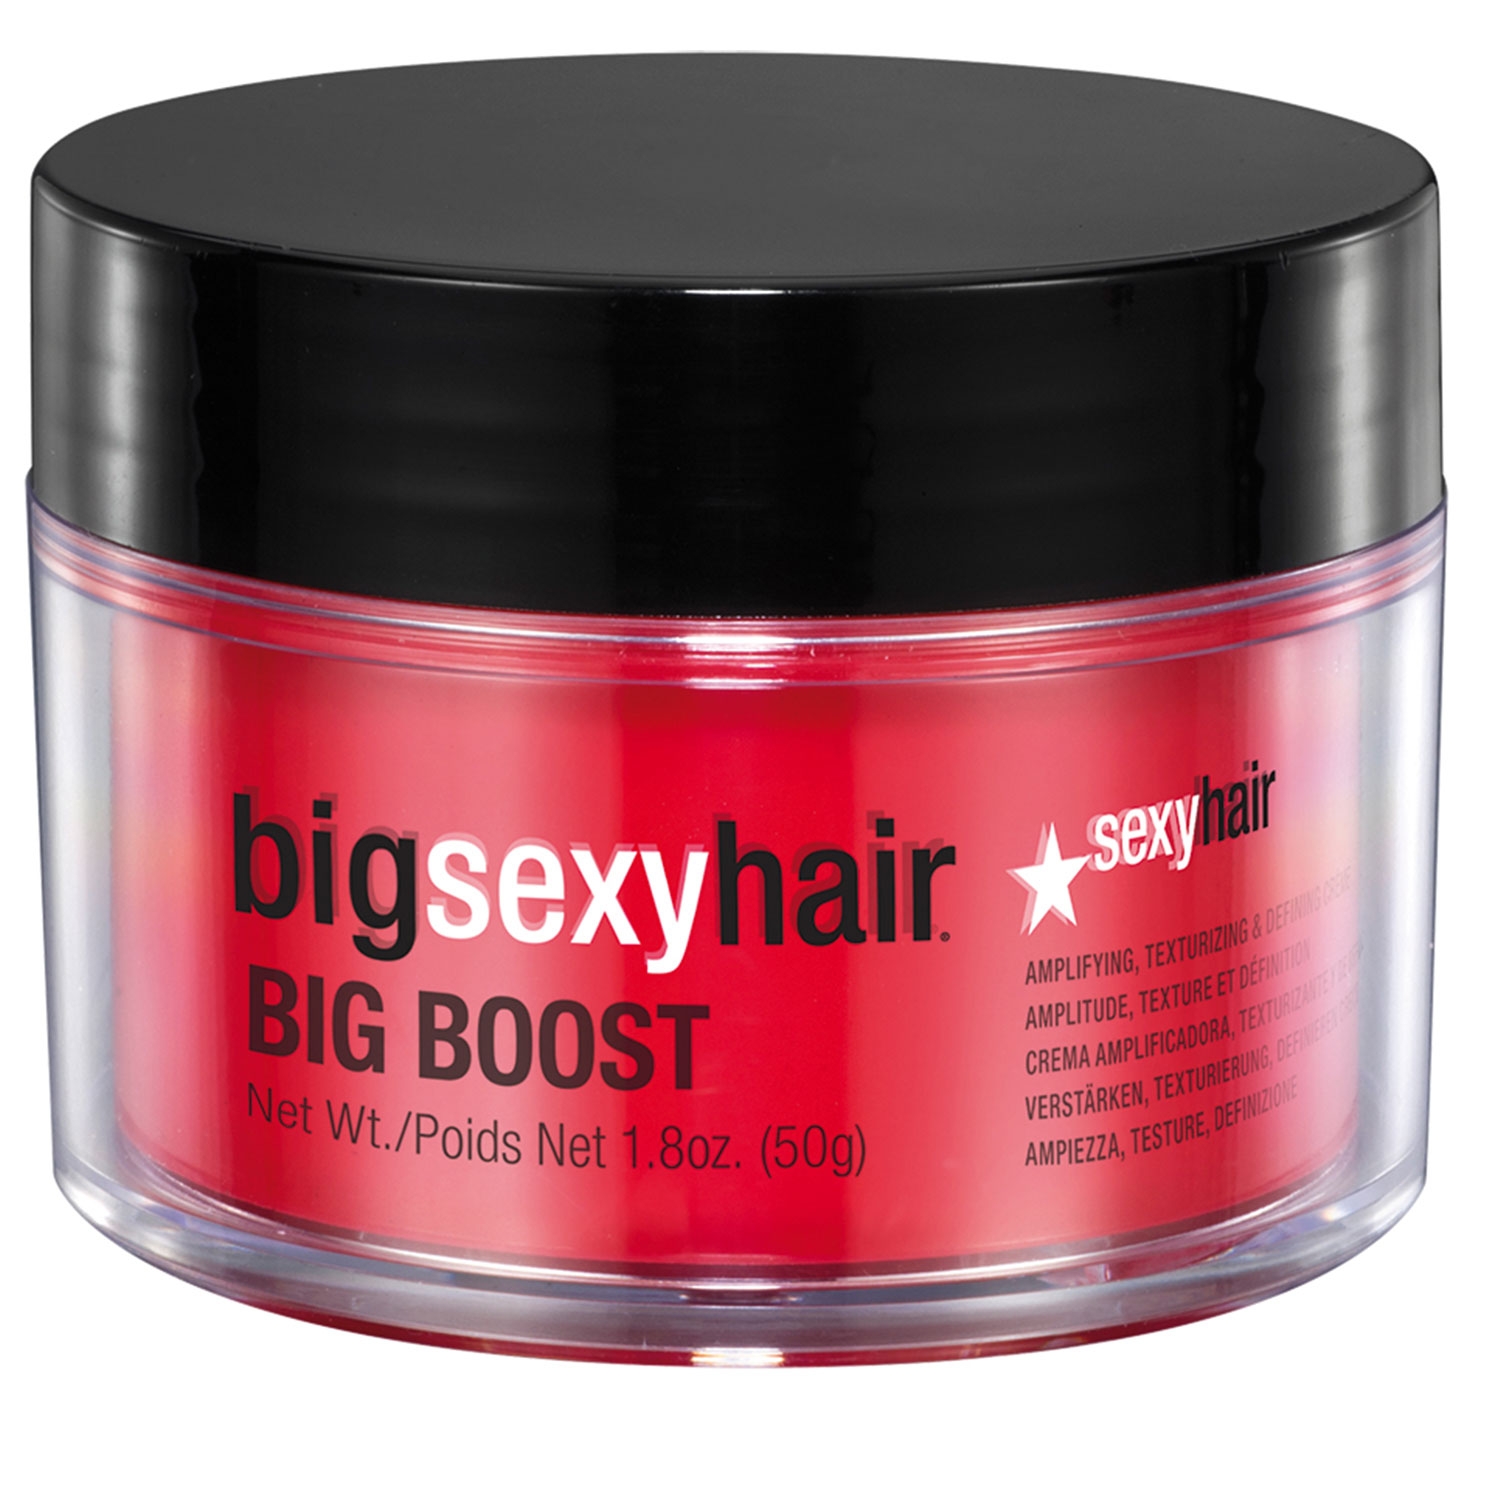 Produktbild von Big Sexy Hair - Big Boost